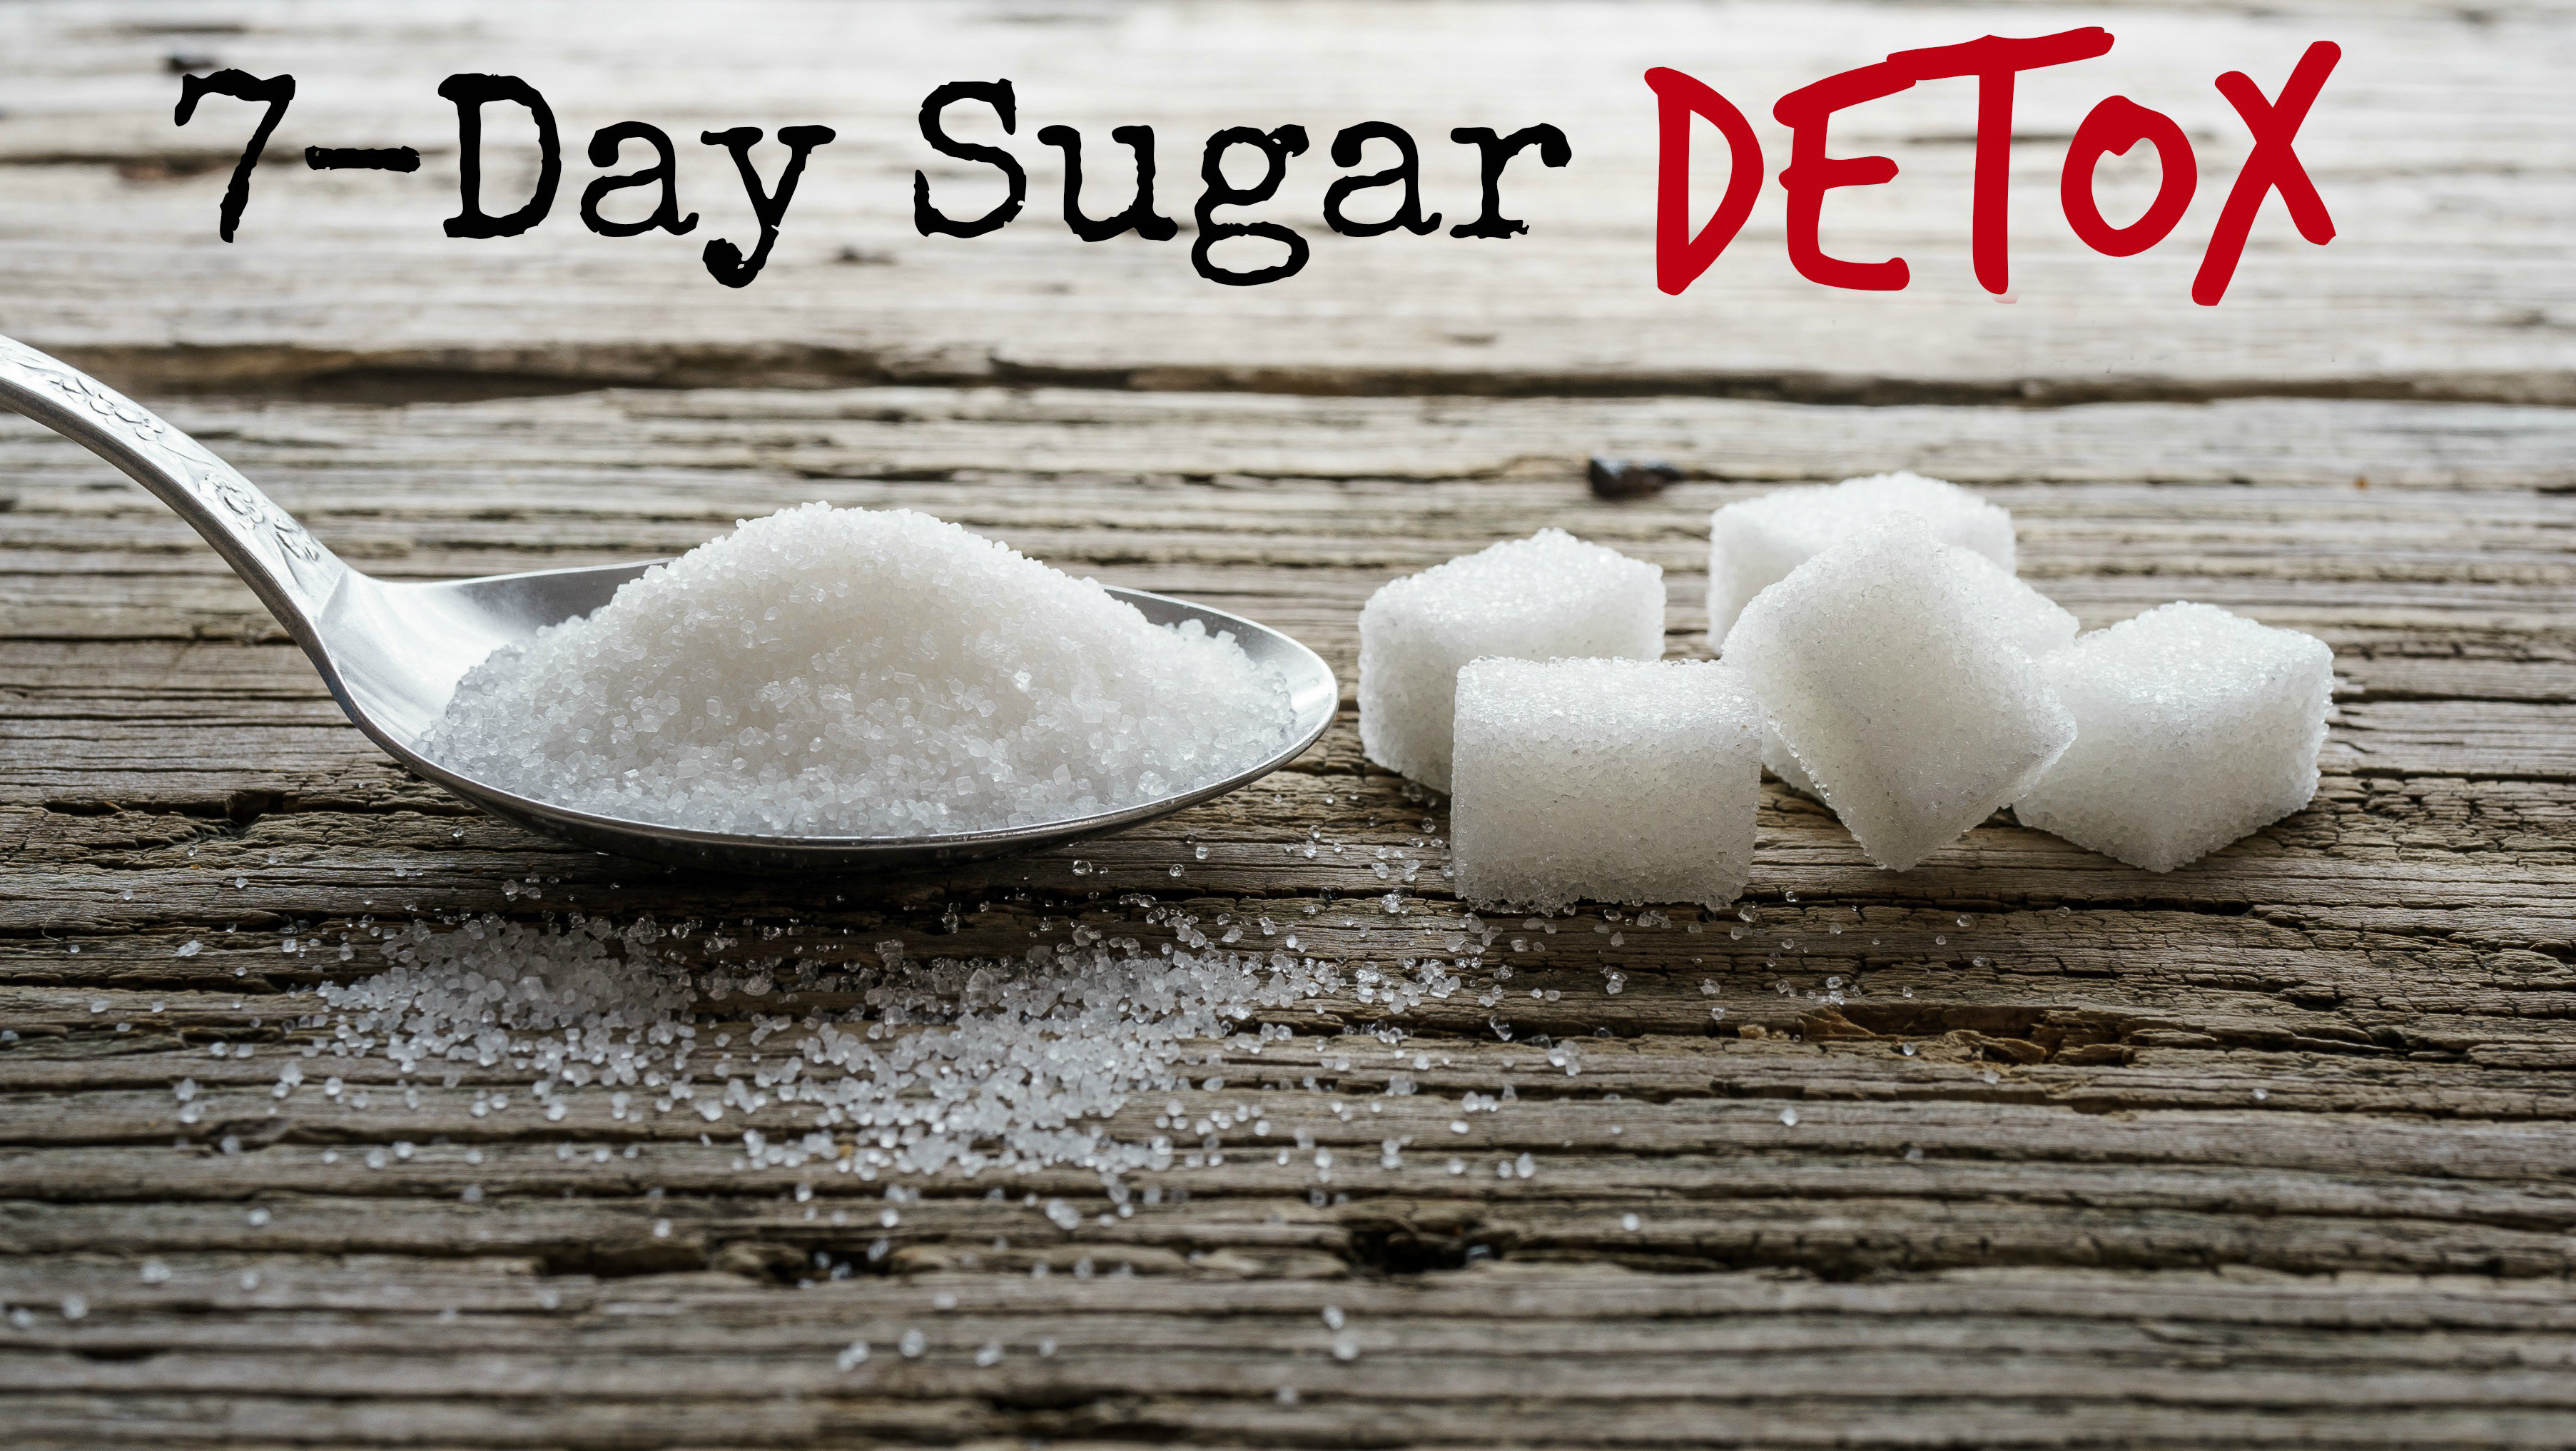 7-Day Sugar Detox Menu Plan That Can Help You Lose 30 Pounds - Women ...